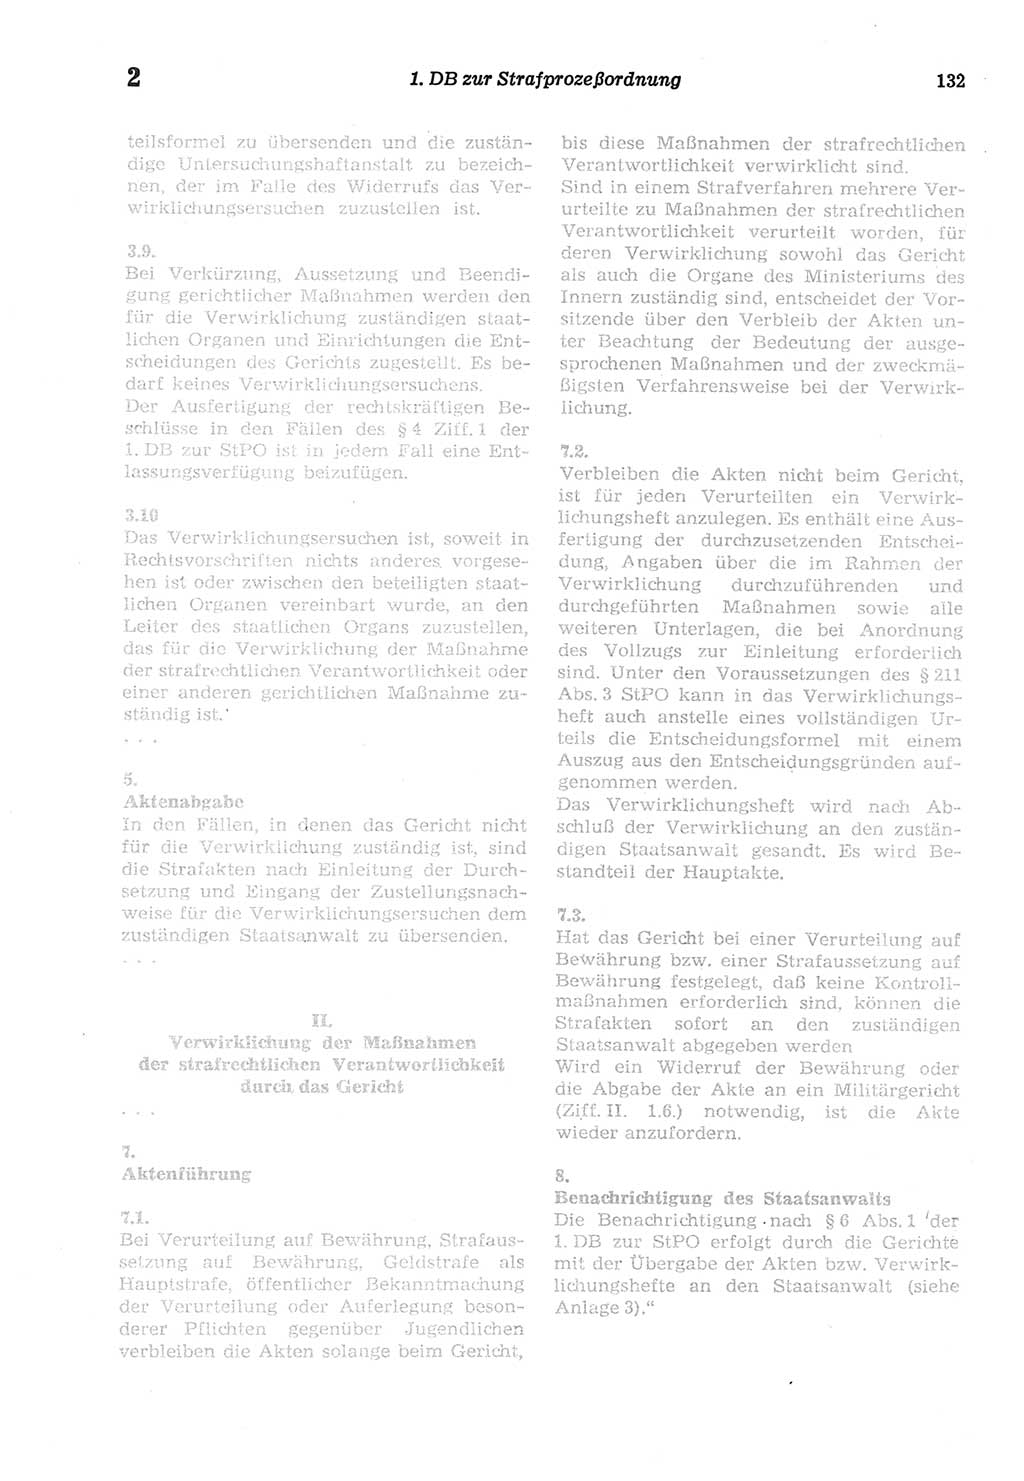 Strafprozeßordnung (StPO) der Deutschen Demokratischen Republik (DDR) sowie angrenzende Gesetze und Bestimmungen 1977, Seite 132 (StPO DDR Ges. Best. 1977, S. 132)